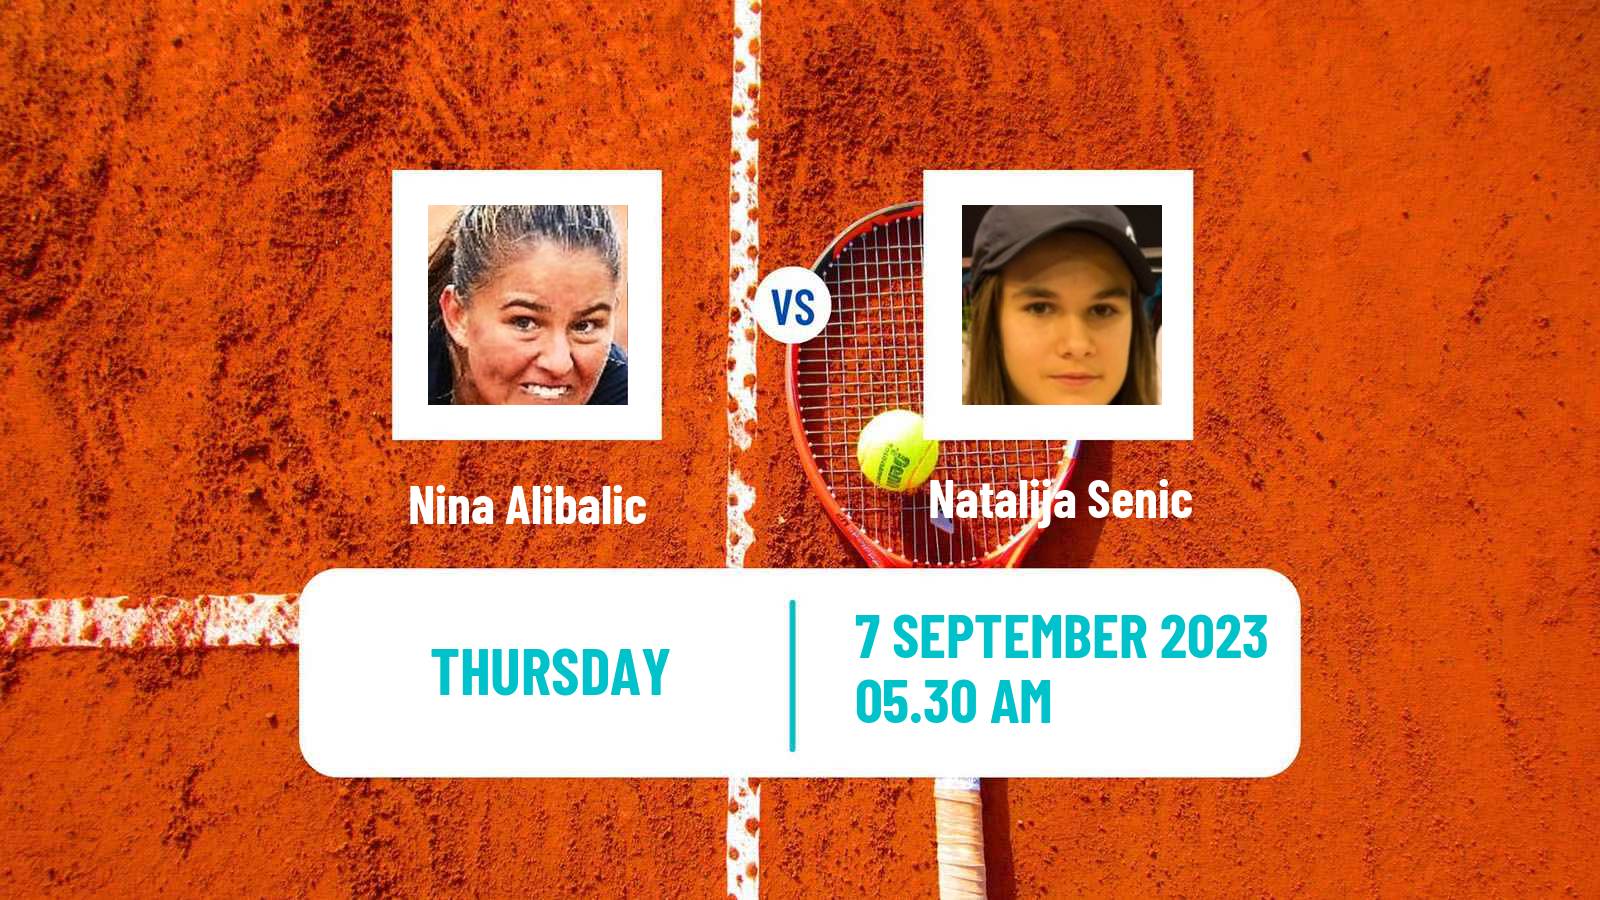 Tennis ITF W15 Kursumlijska Banja 9 Women Nina Alibalic - Natalija Senic